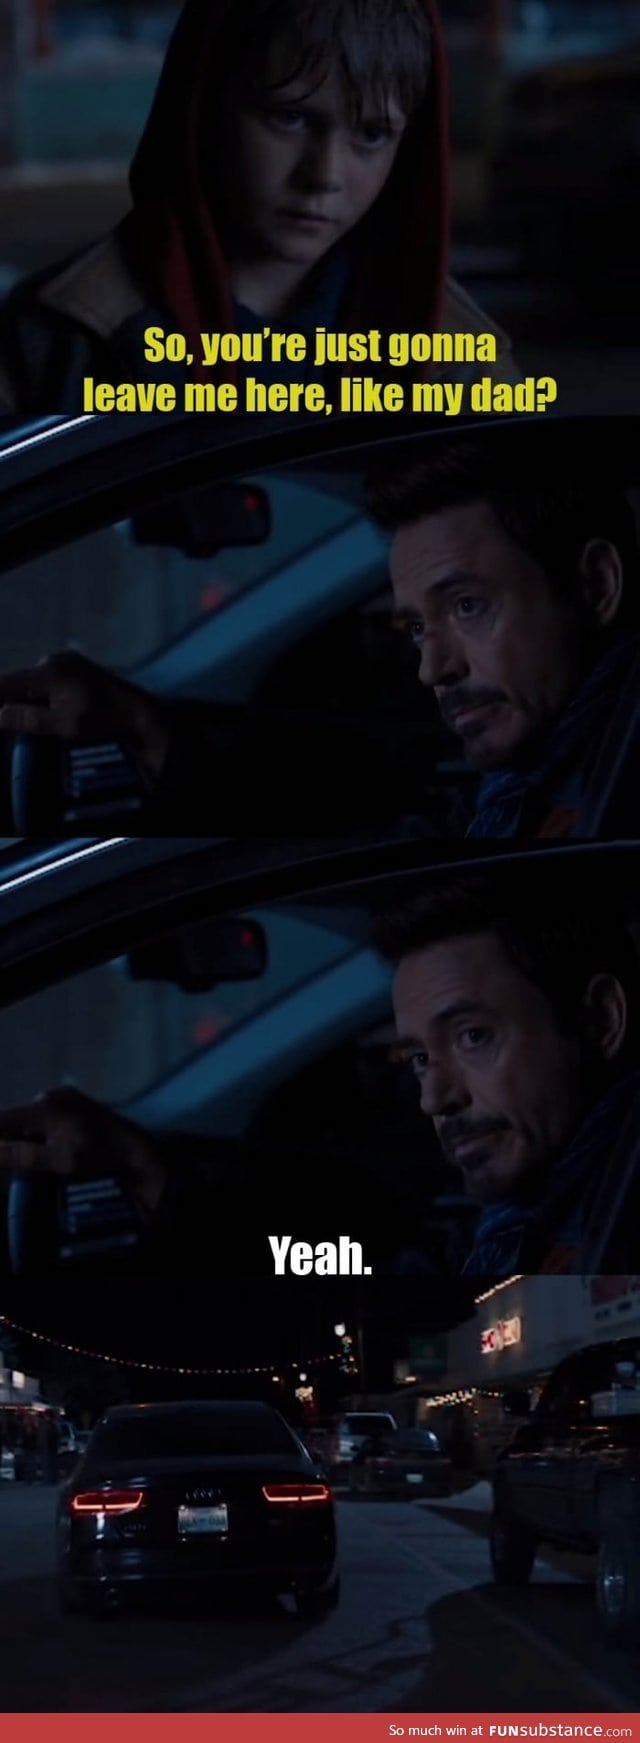 Tony Stark has no chill